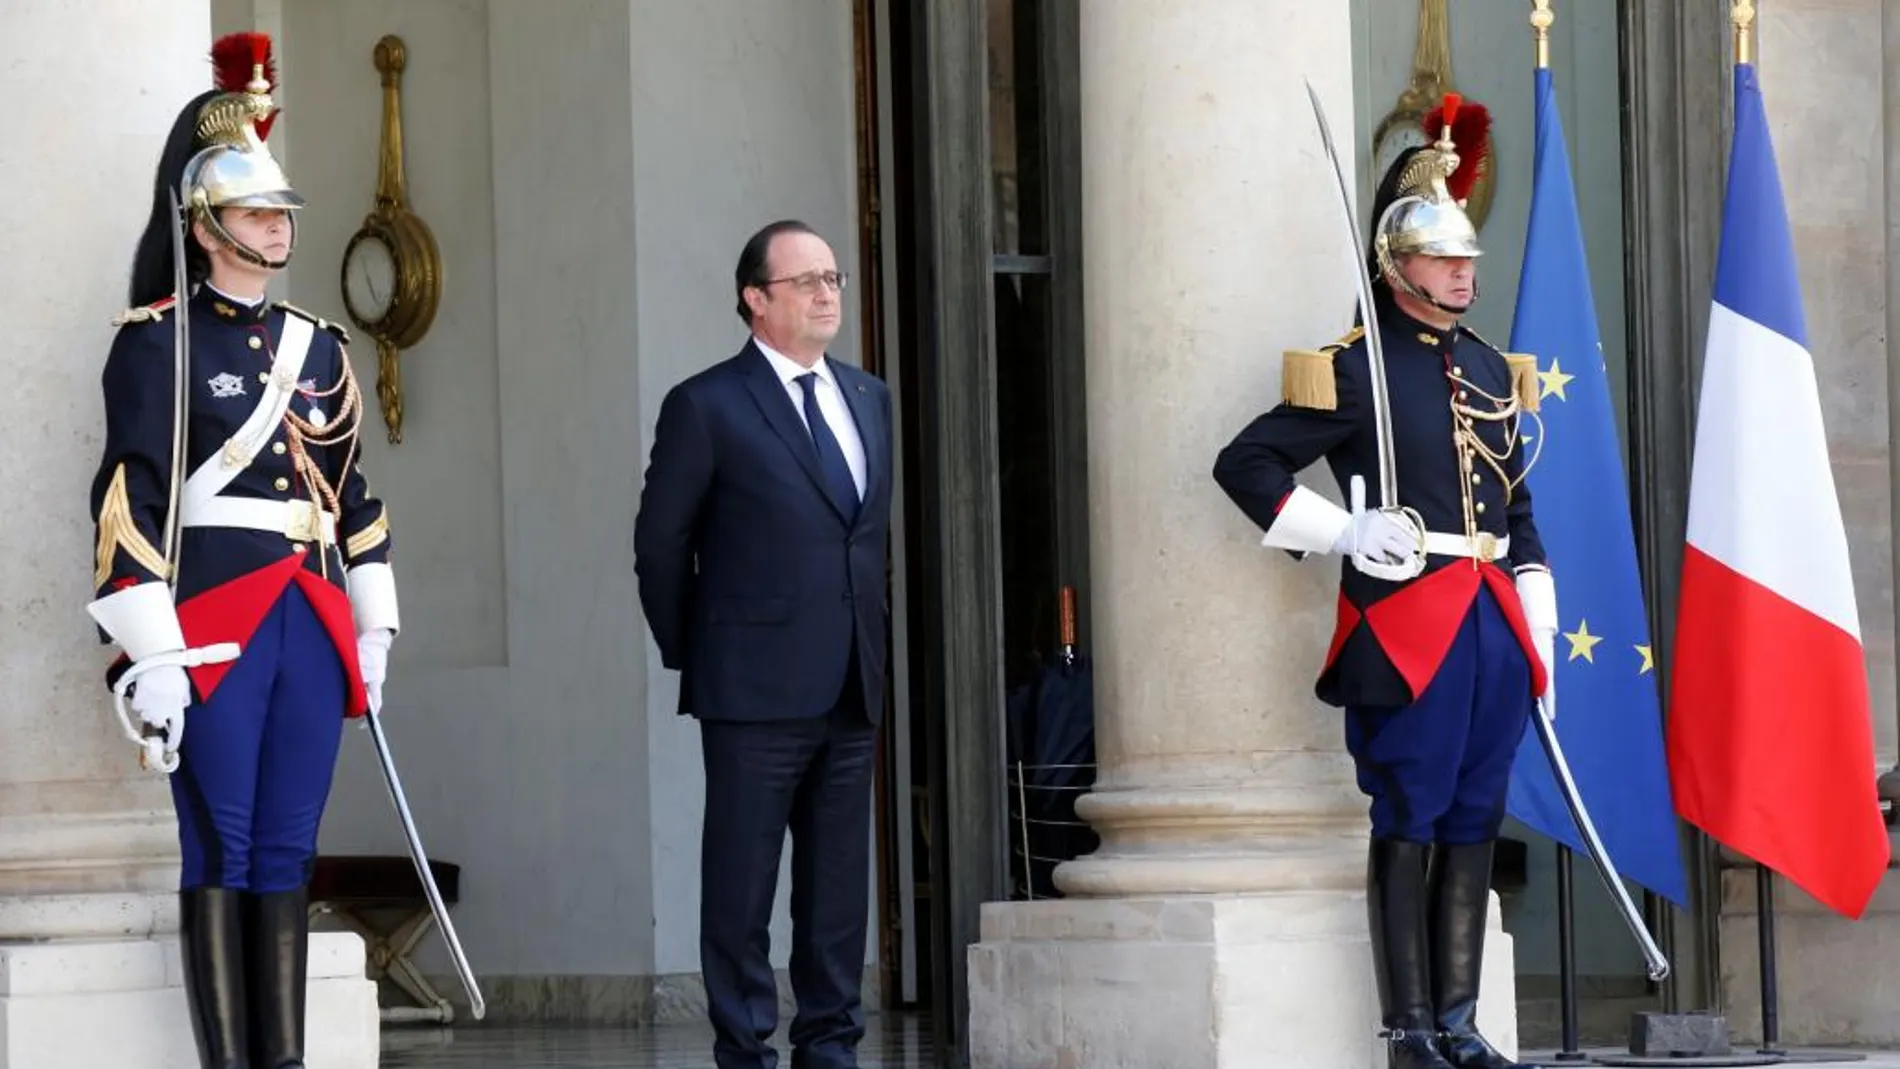 Hollande pide rapidez